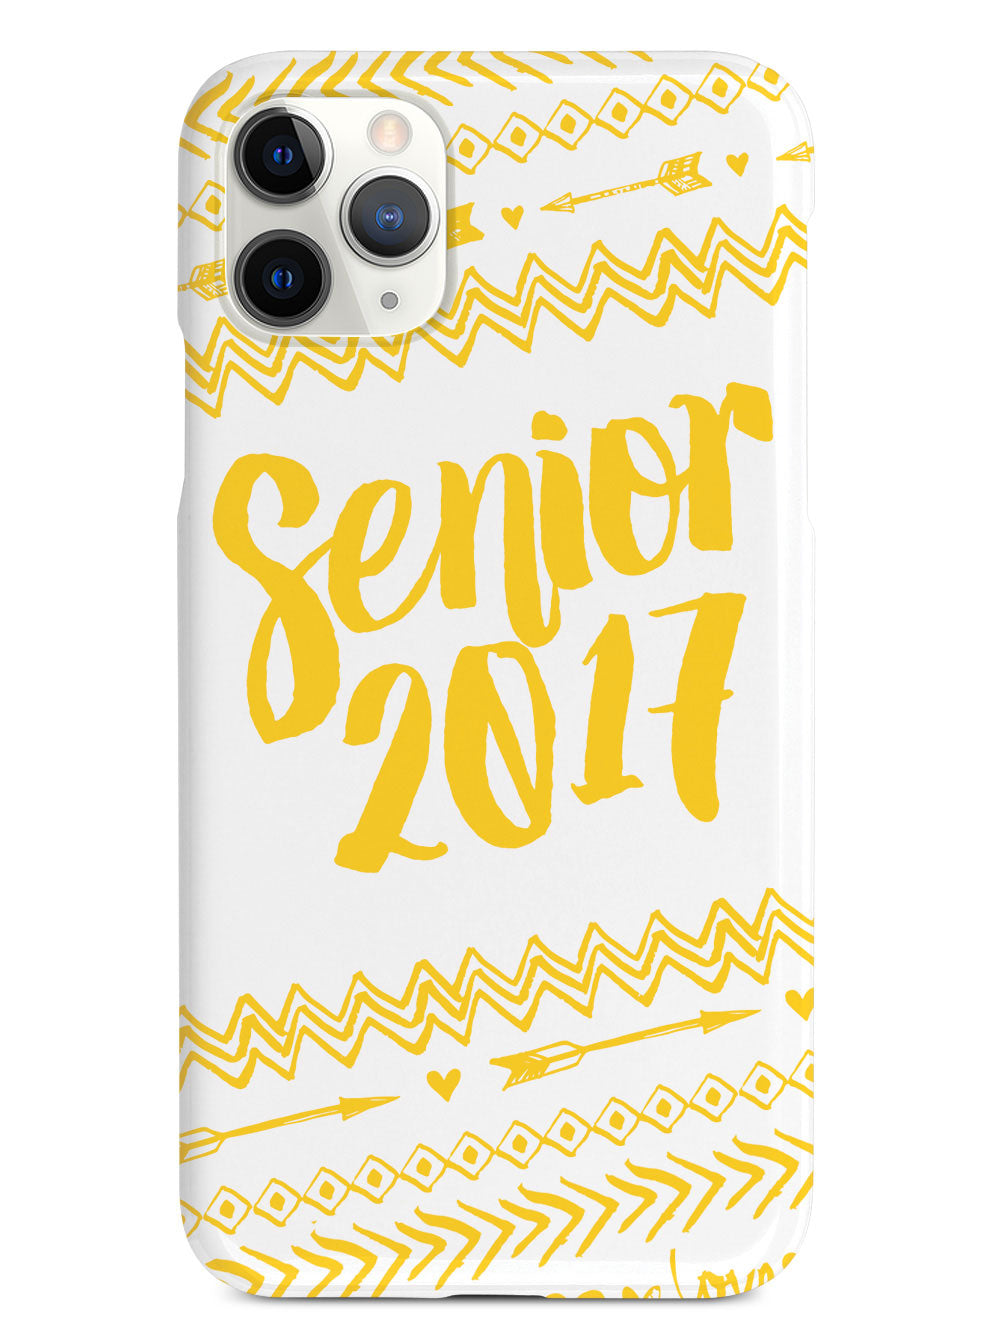 Senior 2017 - Yellow Case